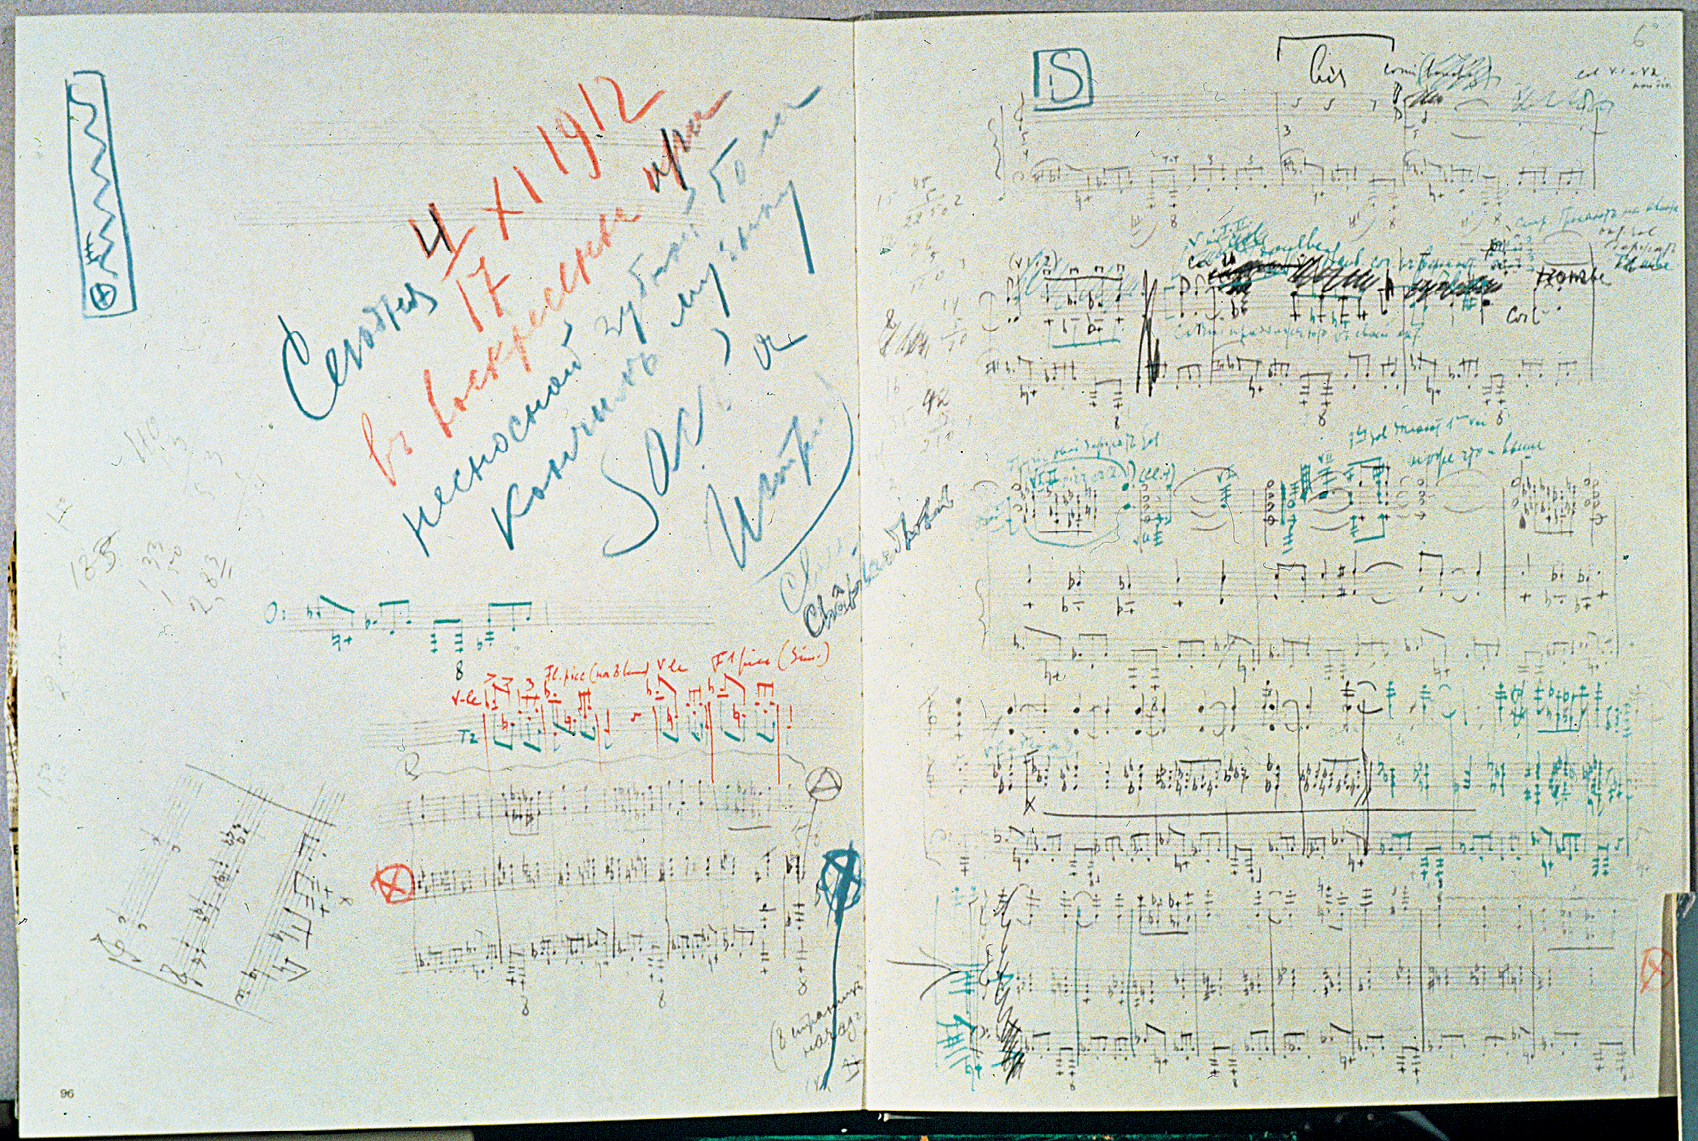 Fotografia. Partitura com desenhos de notas musicais e anotações nas cores azul e vermelho.